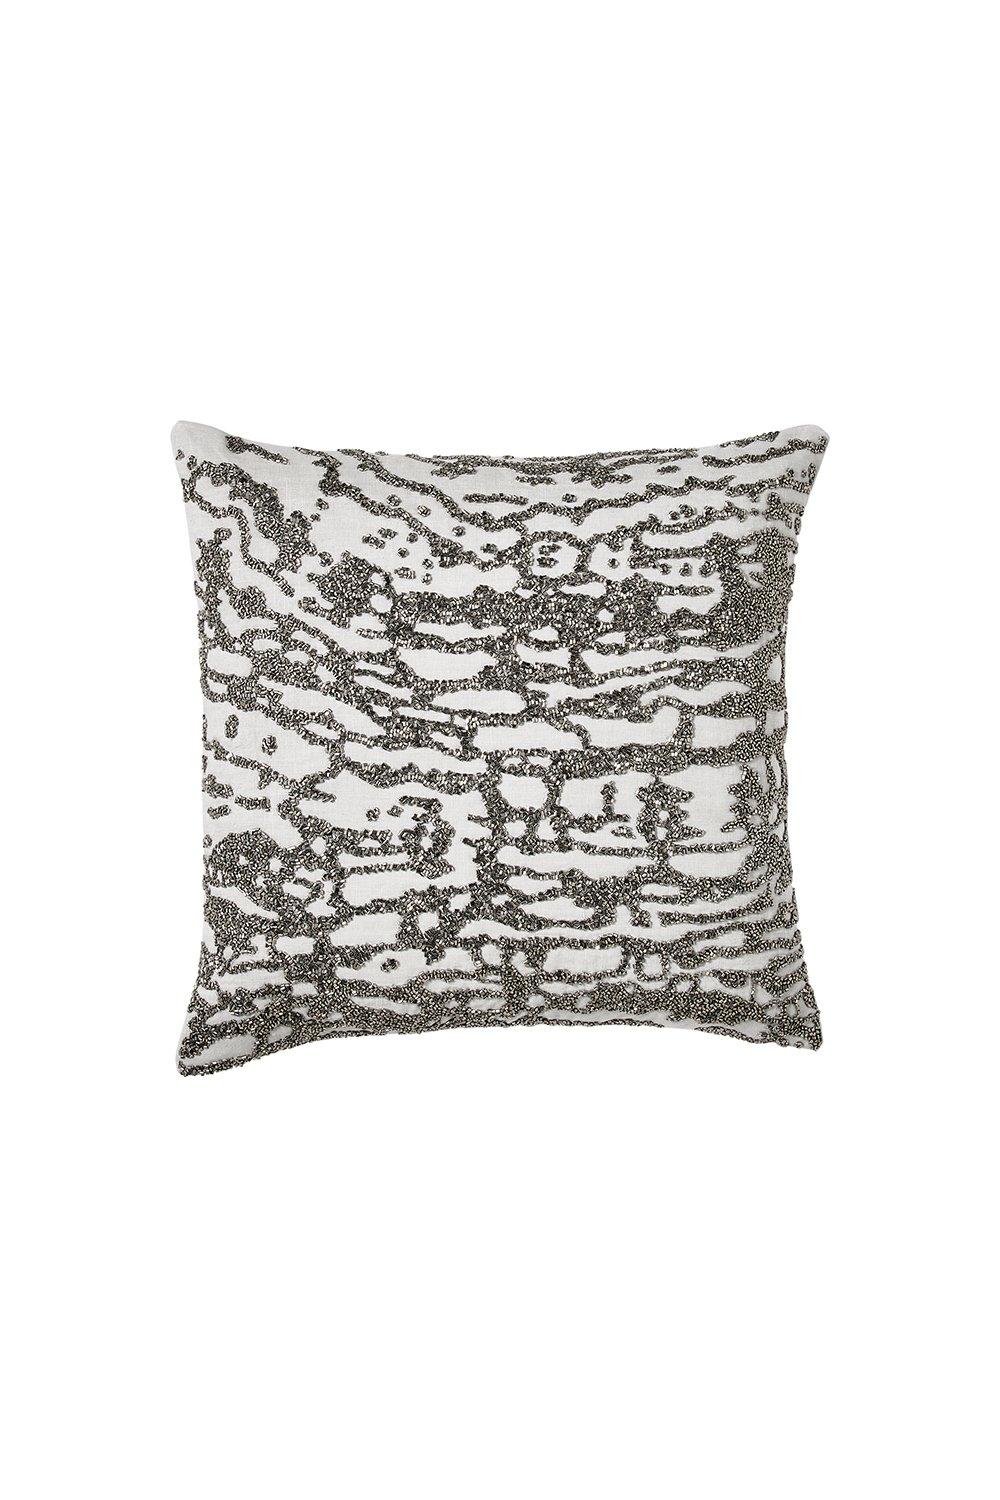 Soft Furnishings | 'Luna' Cushion 40X40 cm | Donna Karan